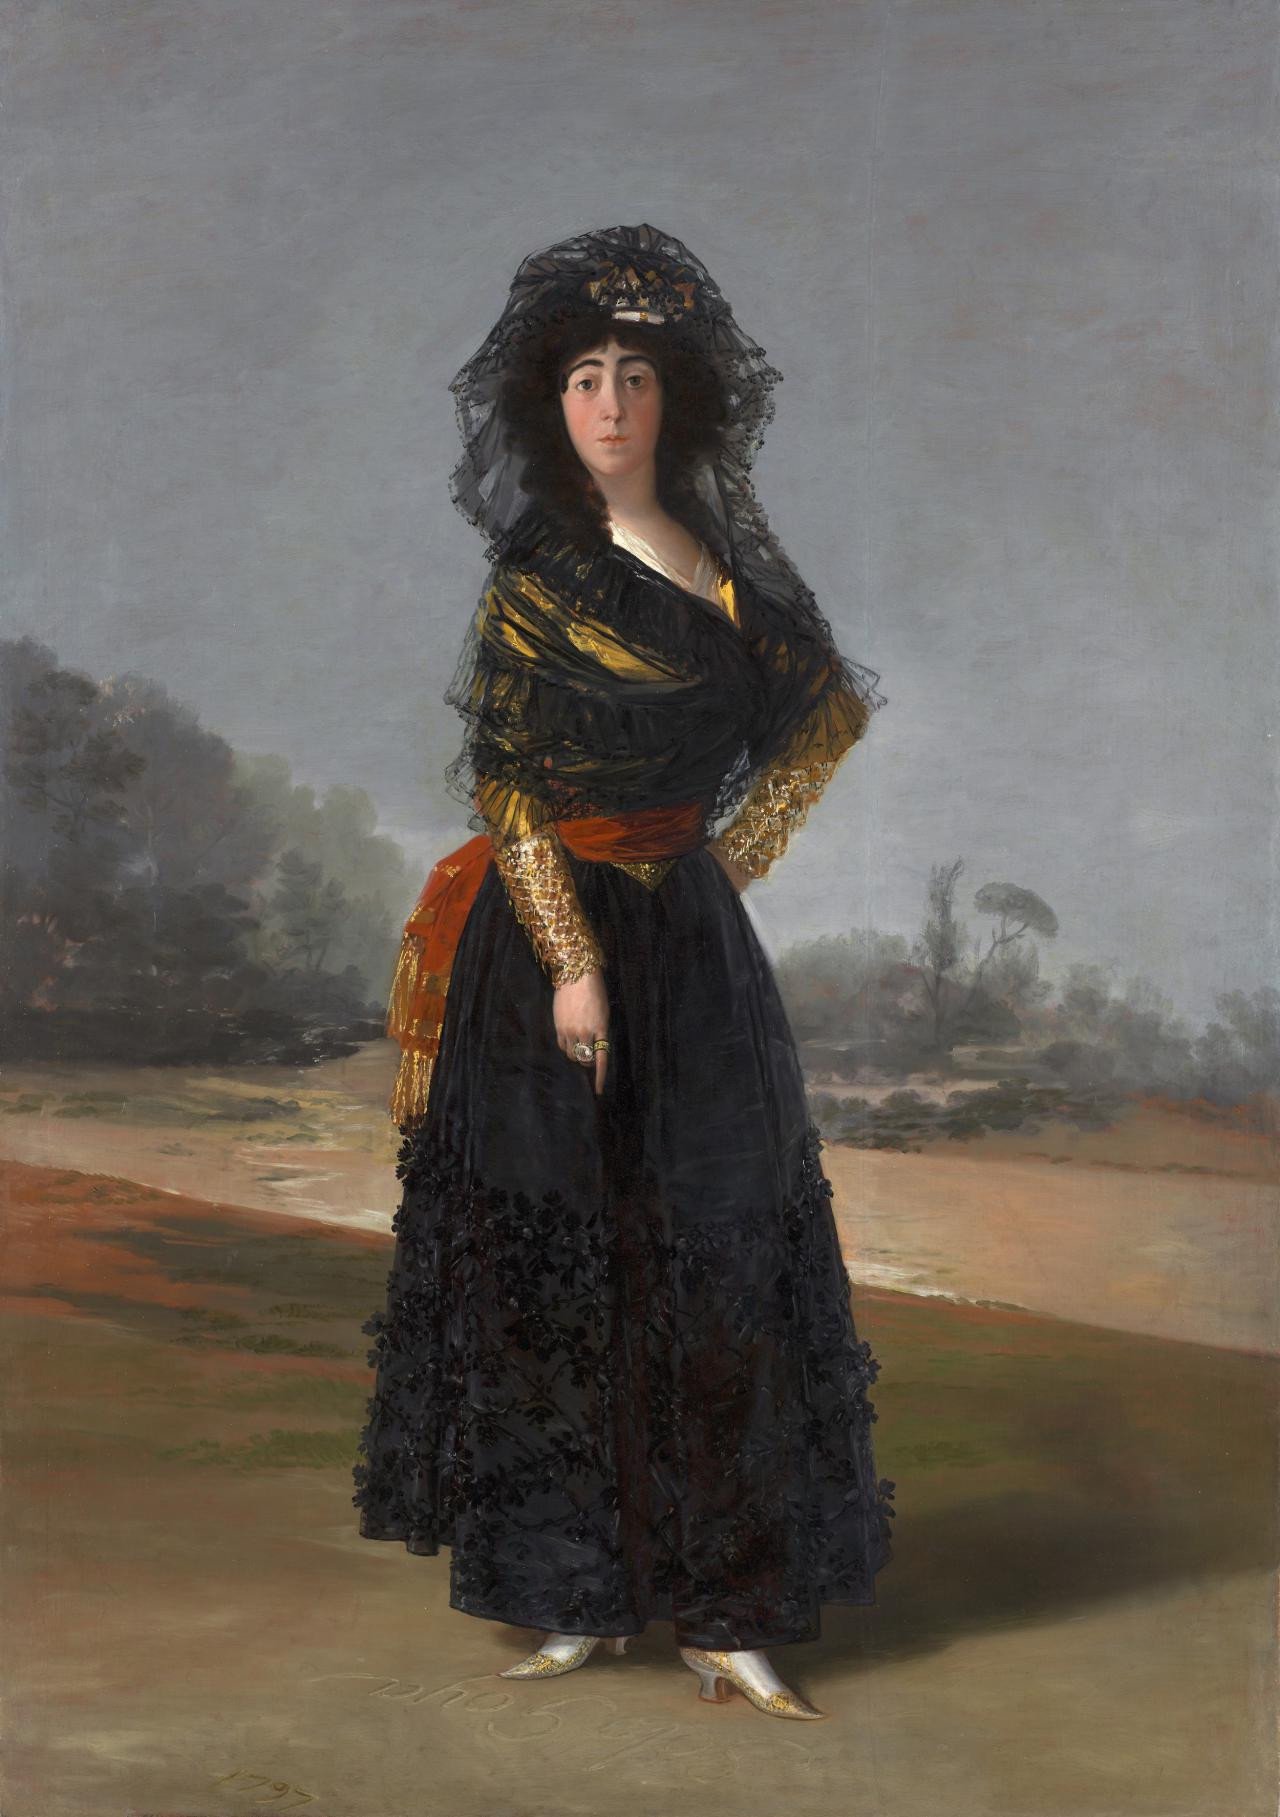 La duquesa de Alba by Francisco Goya - 1797 - 210 x 148 cm Sociedad Hispánica de América